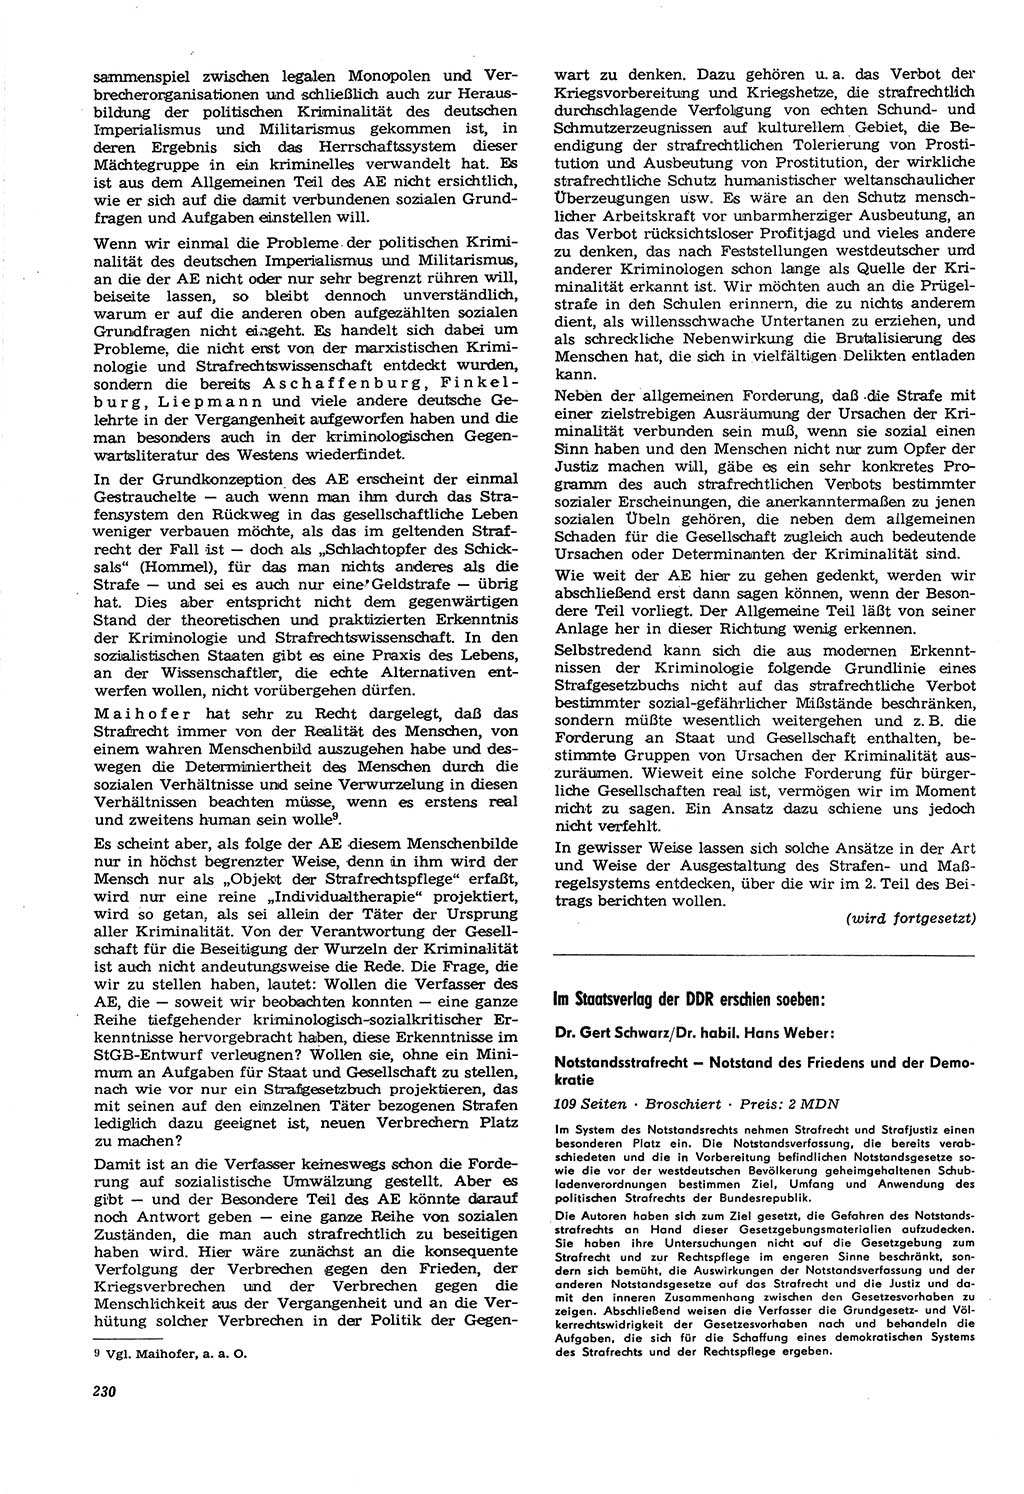 Neue Justiz (NJ), Zeitschrift für Recht und Rechtswissenschaft [Deutsche Demokratische Republik (DDR)], 21. Jahrgang 1967, Seite 230 (NJ DDR 1967, S. 230)